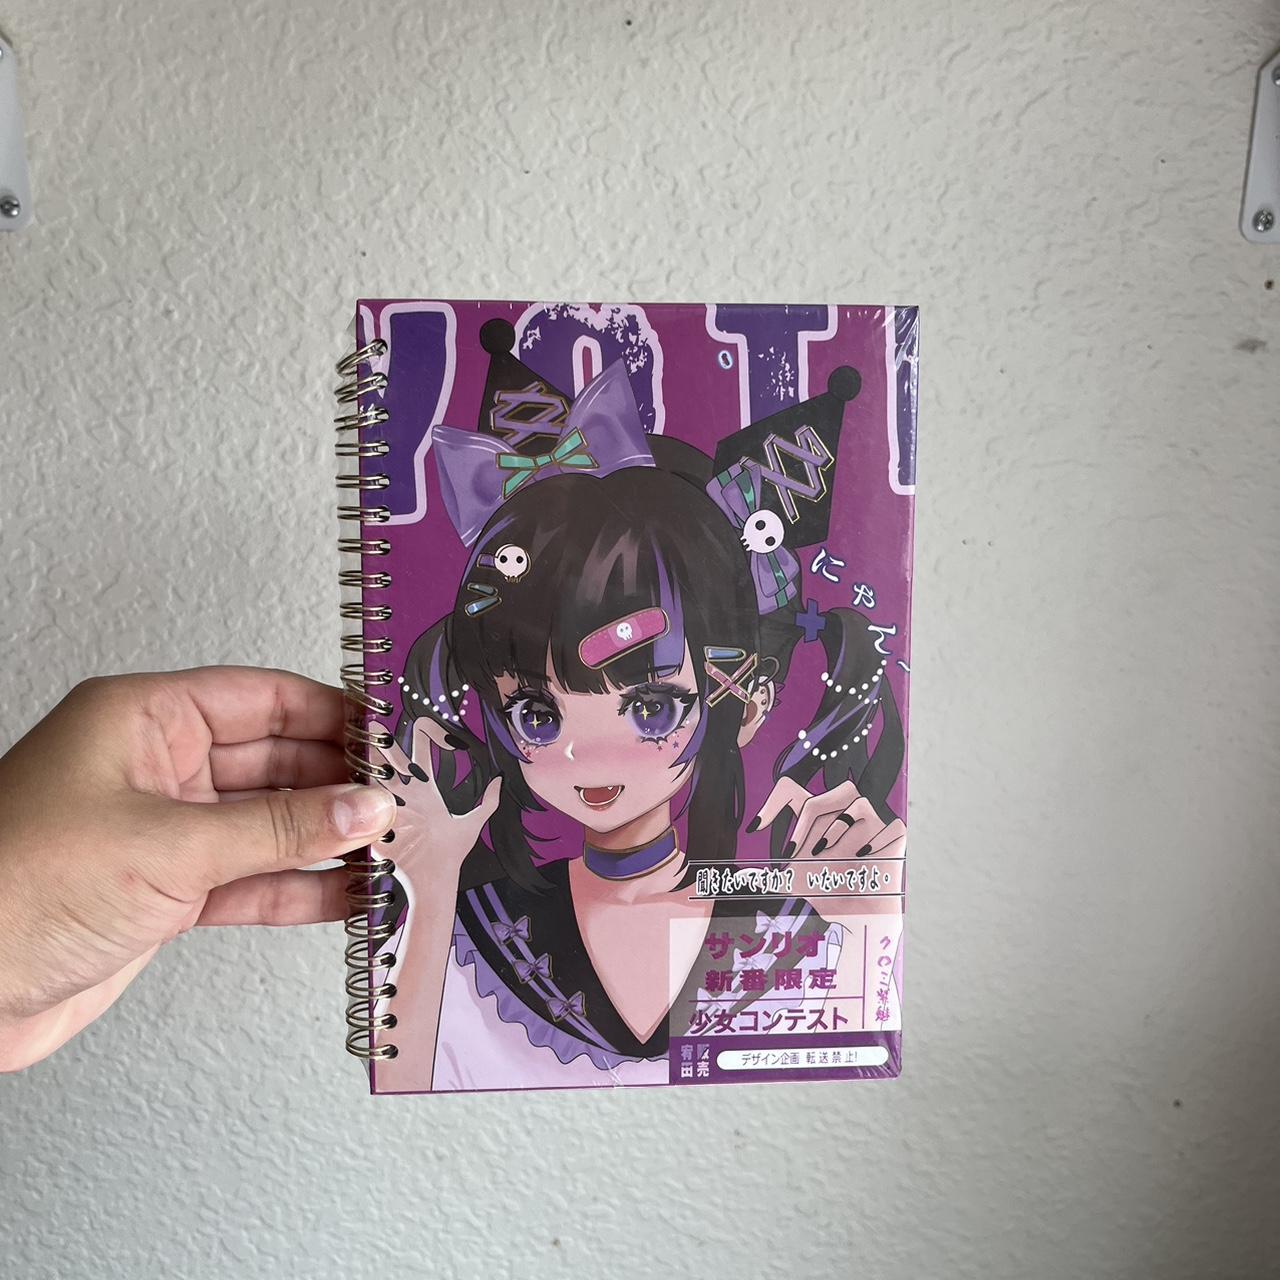 Sanrio Kuromi kawaii anime notebook #kuromi - Depop